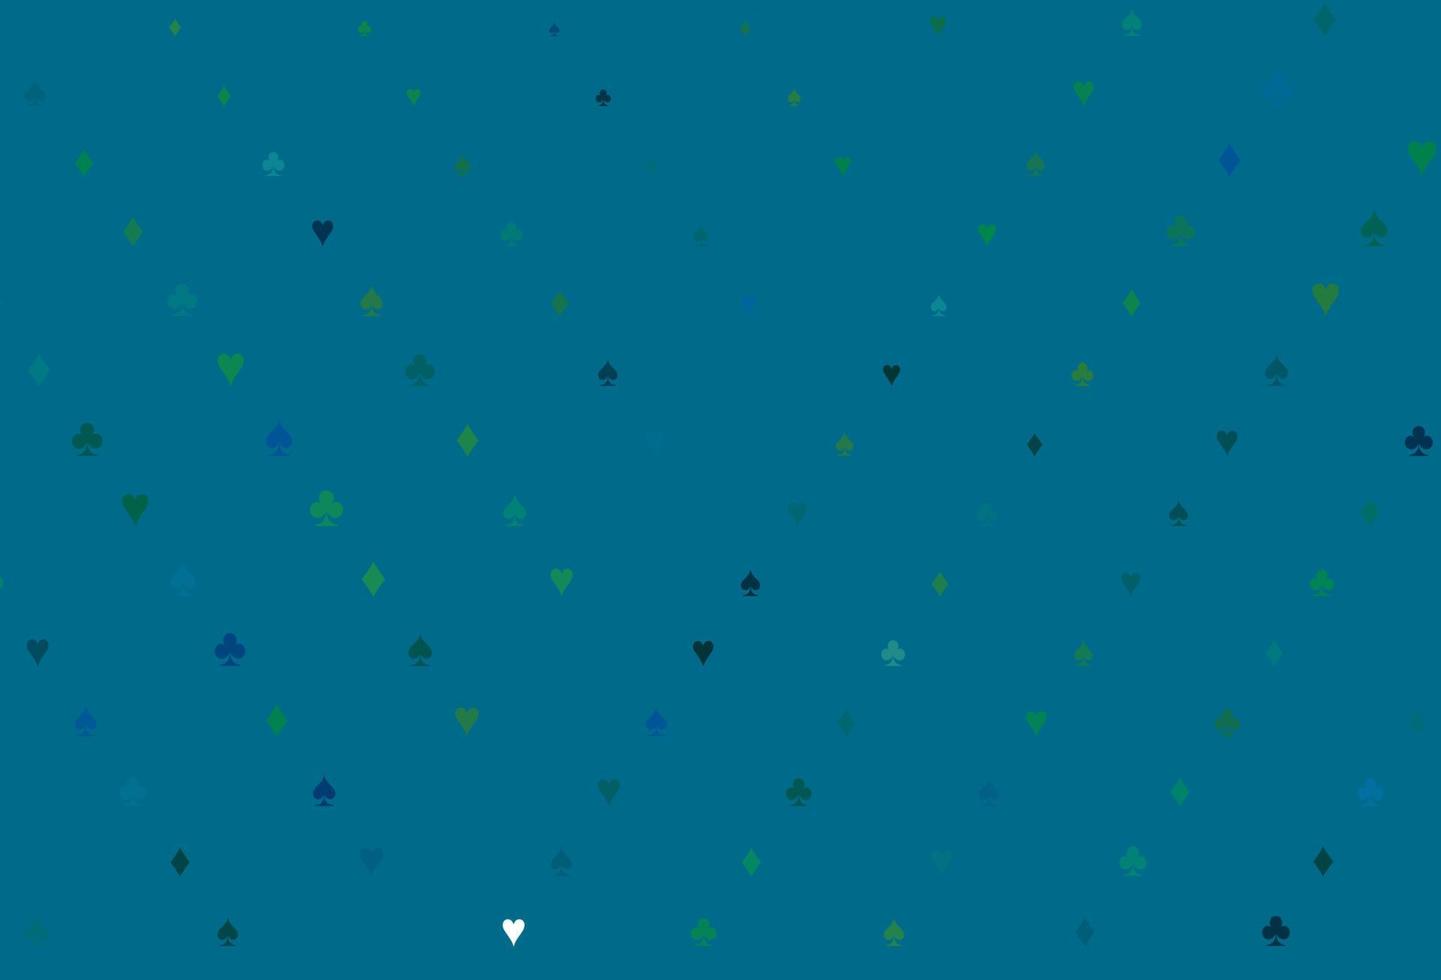 ljusblå, grön vektorbakgrund med kortskyltar. vektor